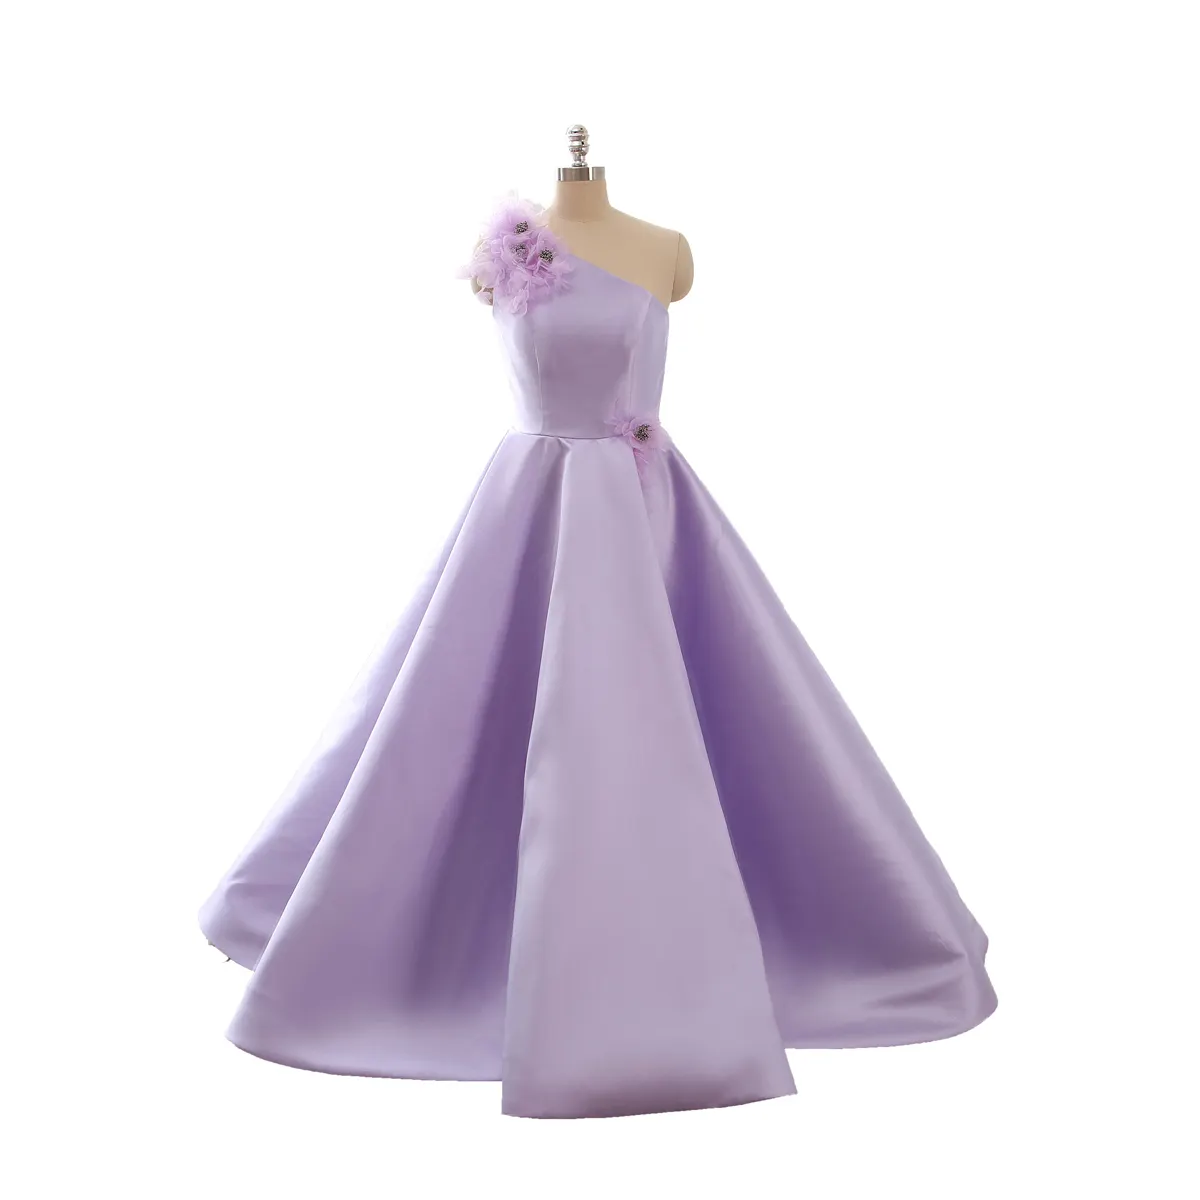 Robe en satin violette pour cérémonie, vêtement professionnel de demoiselles d'honneur, sol, longueur courte, pour anniversaire, mariage pour enfants, vente en gros